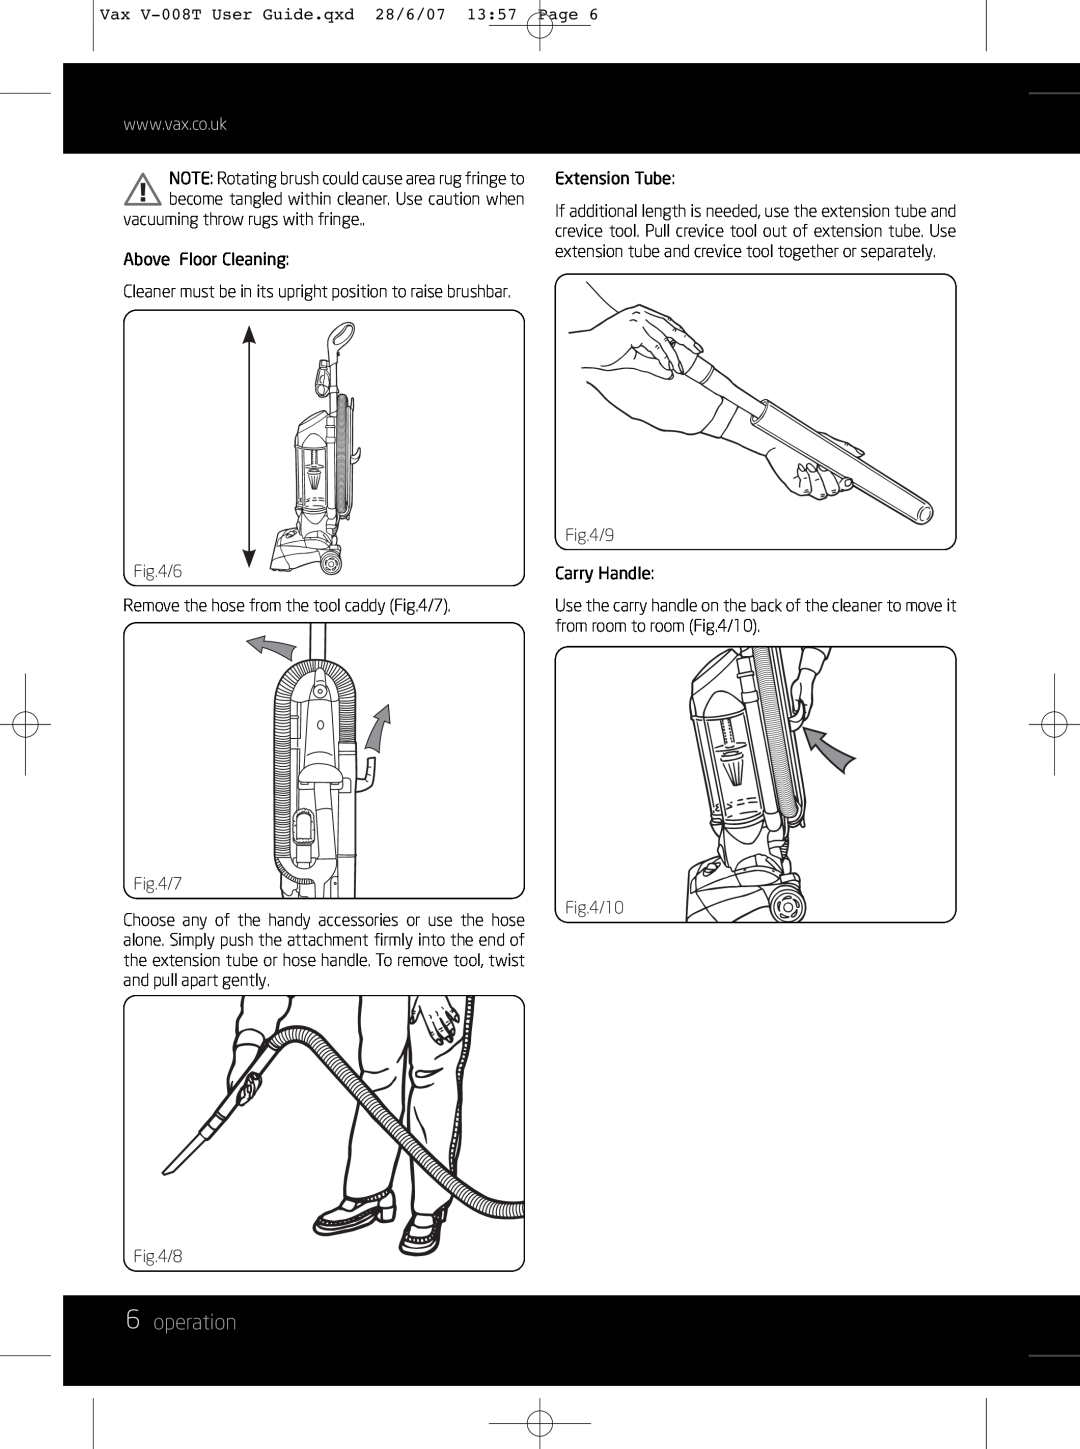 Vax V-008T instruction manual 6operation 